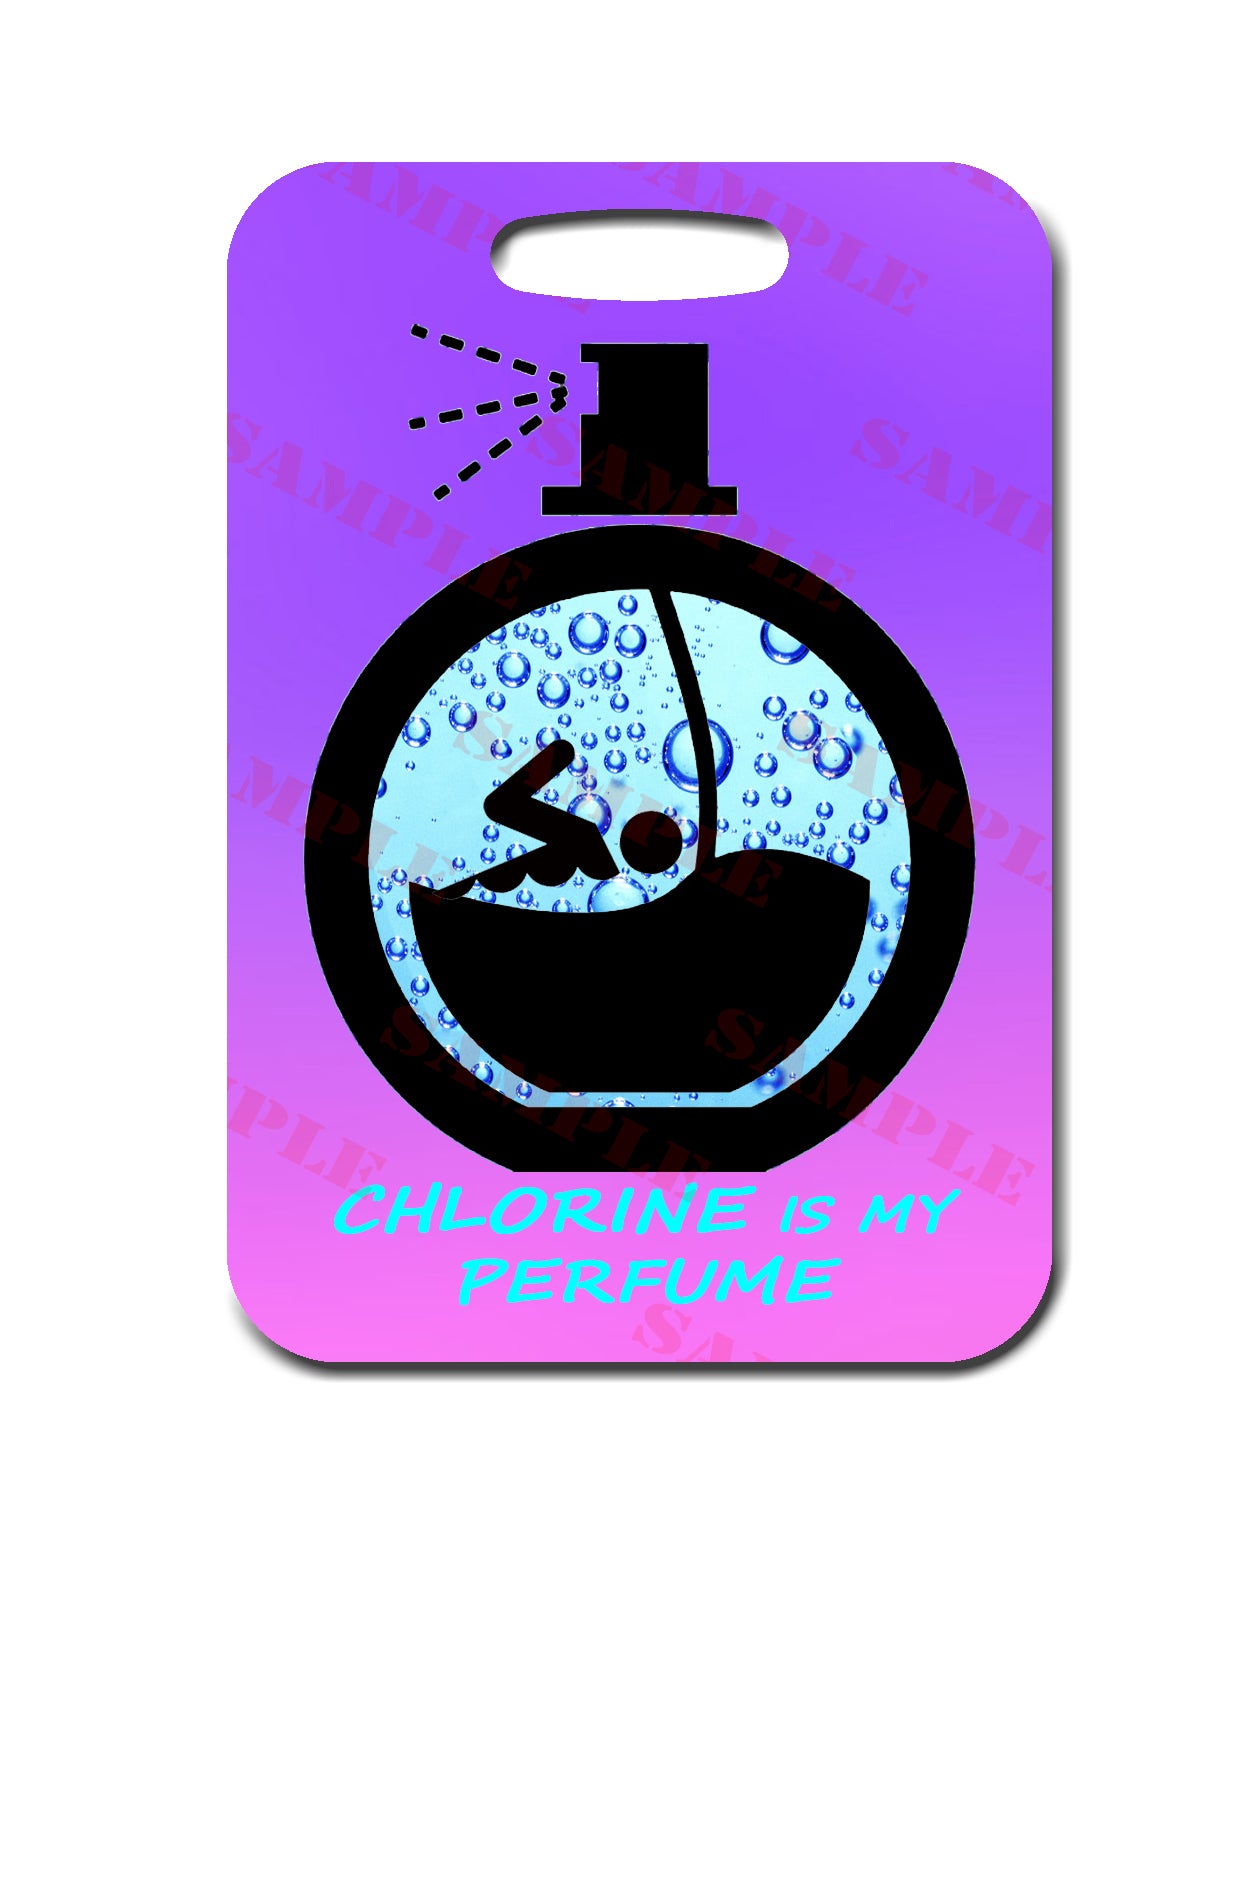 Chlorine Is My Perfume